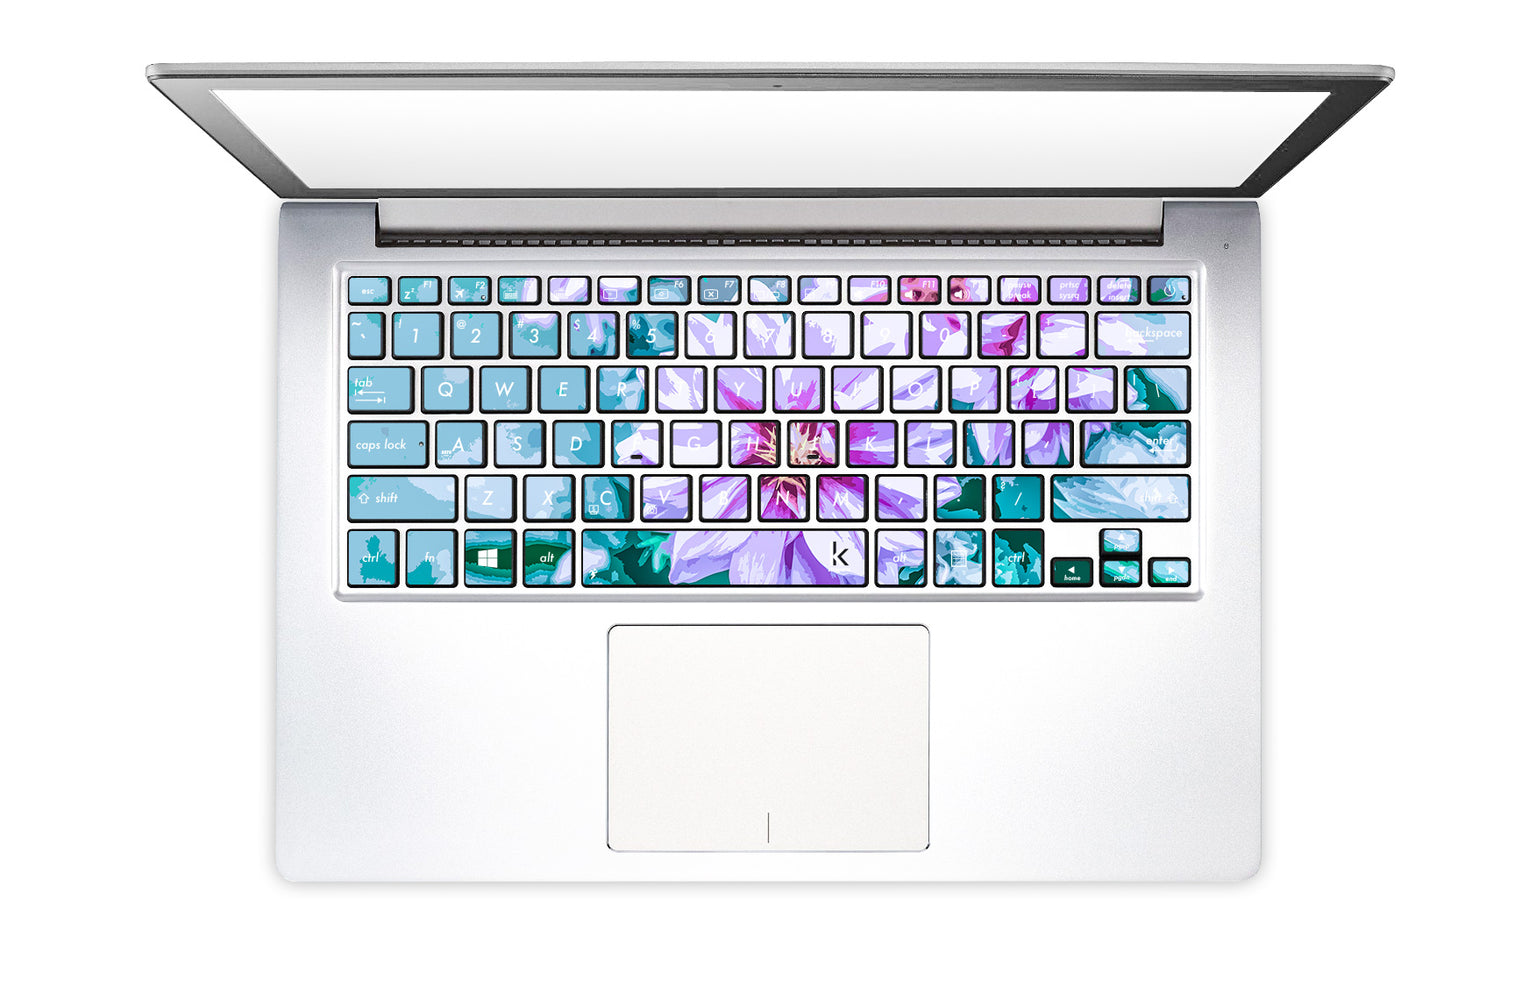 June Flowers Laptop Keyboard Stickers